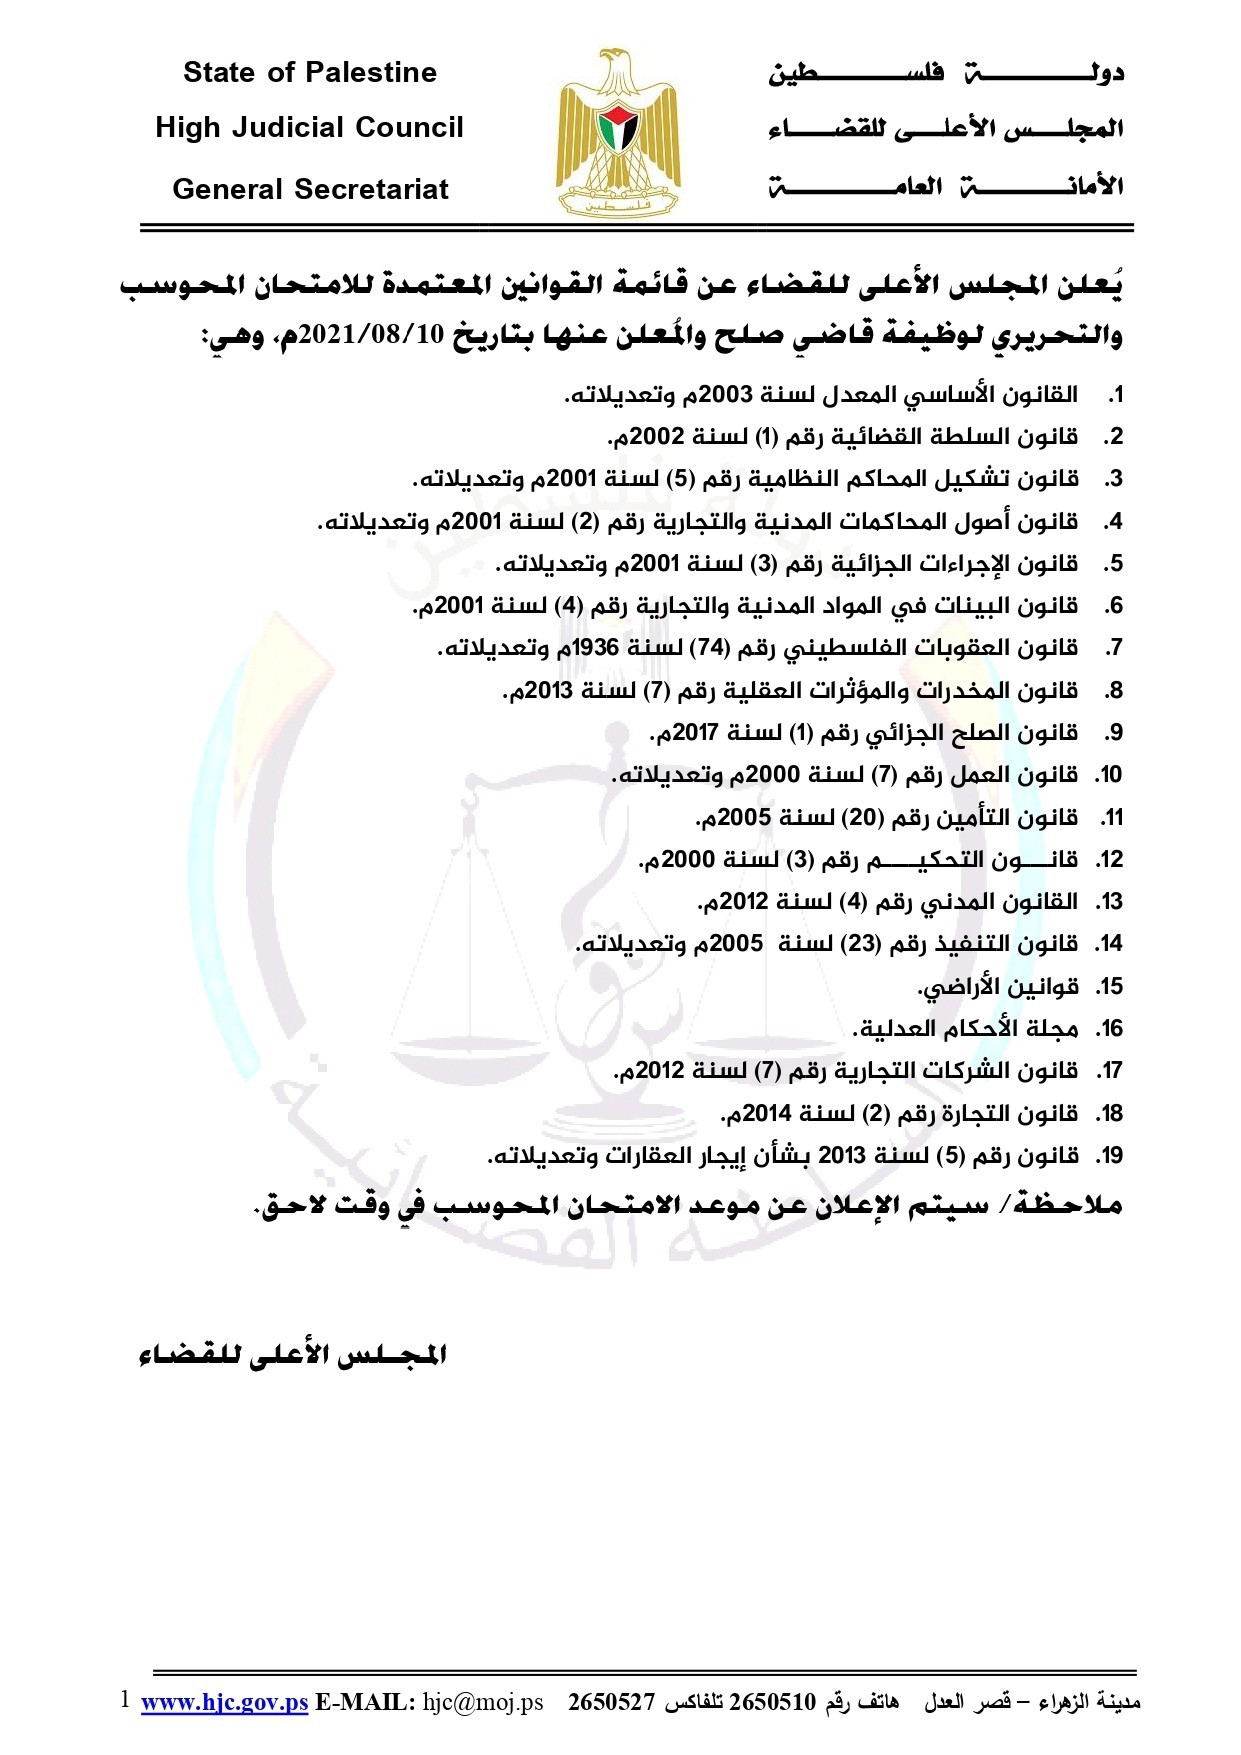 المجلس الأعلى للقضاء بغزّة يُعلن قائمة القوانين في امتحان وظيفة "قاضي صلح"